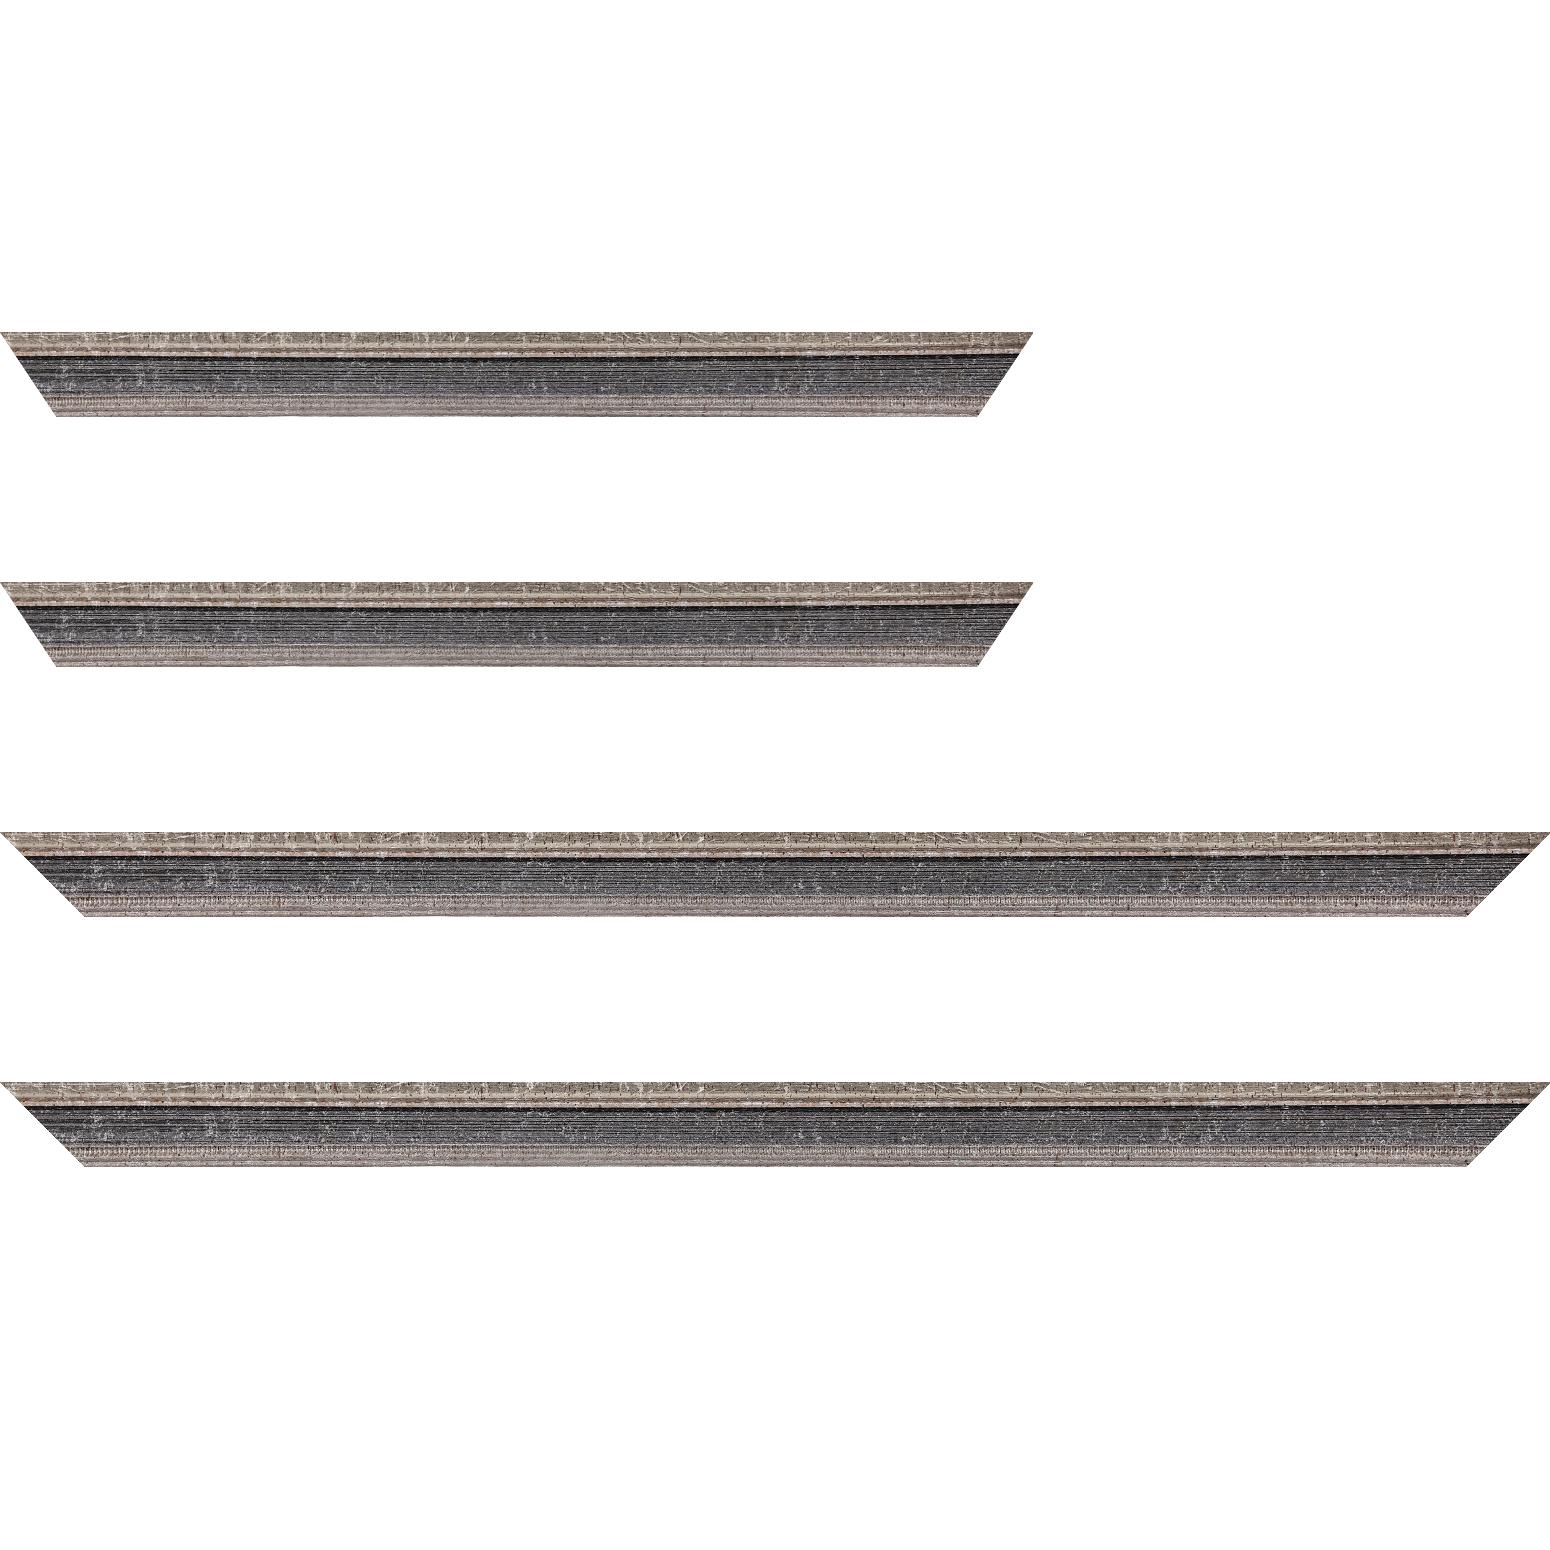 Baguette bois profil incurvé largeur 2.4cm argent antique gorge gris noirci vieilli filet perle argent